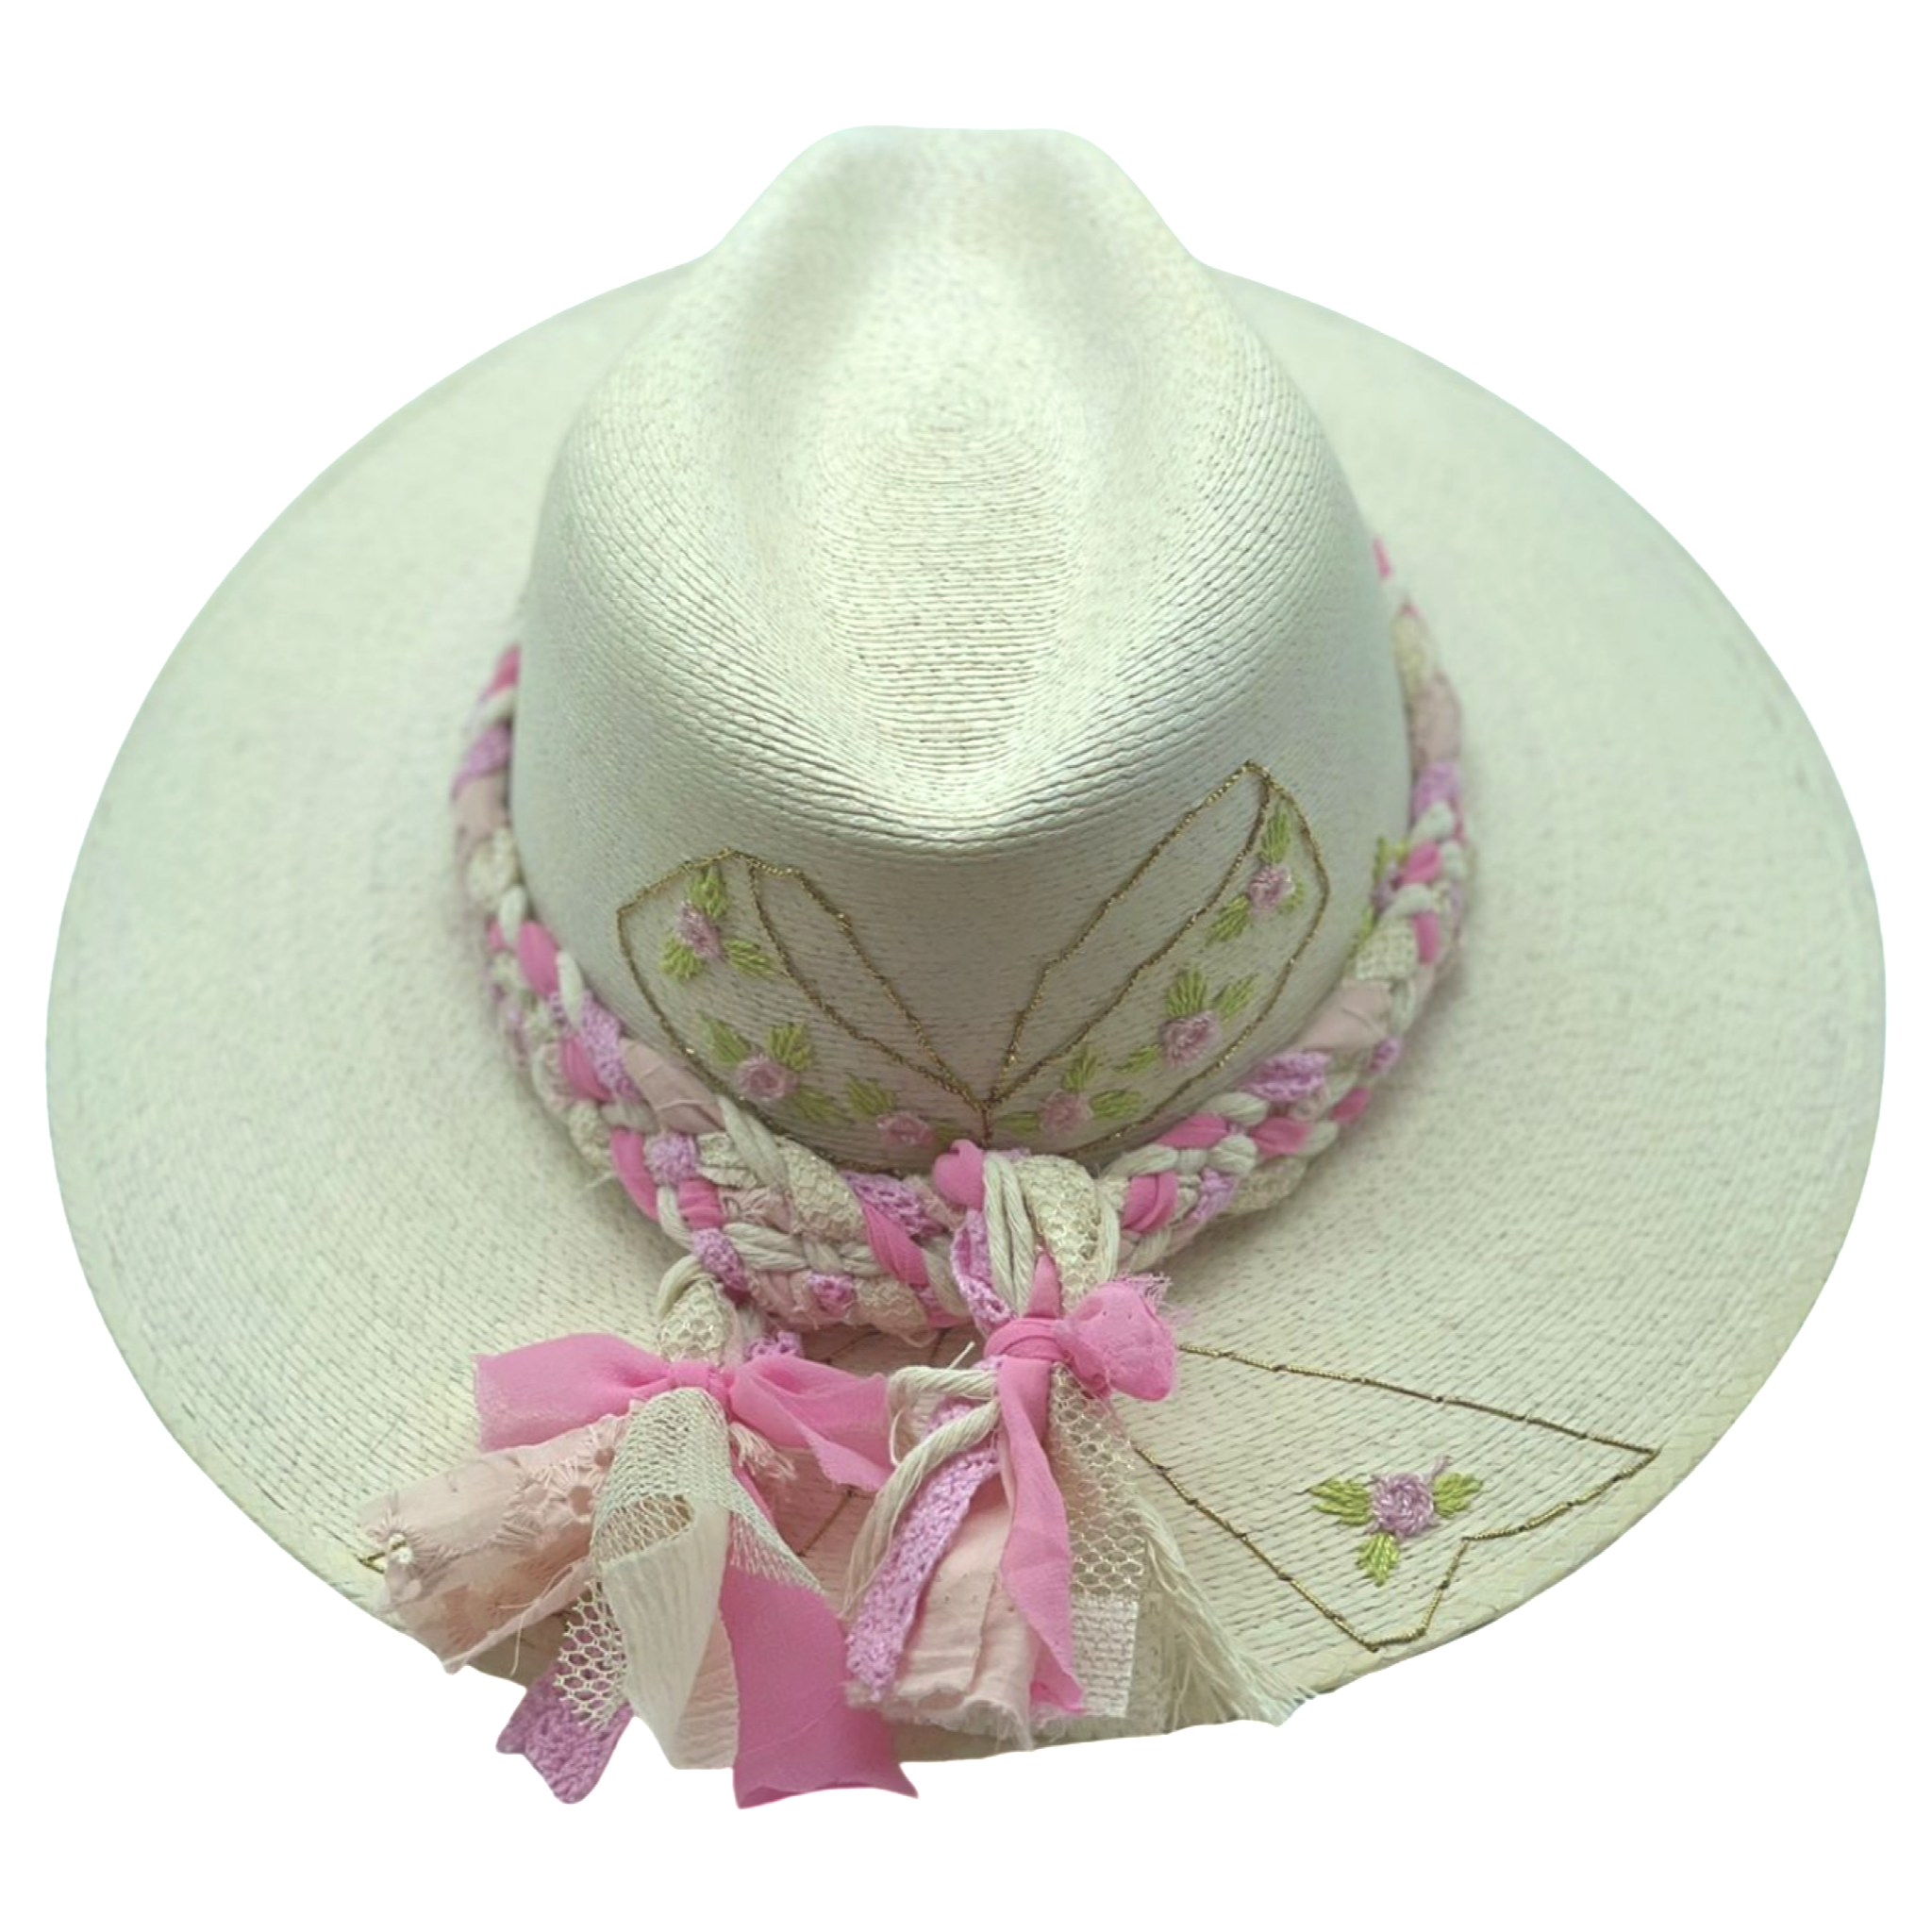 Exclusive Olivia Hat by Corazon Playero - Preorder